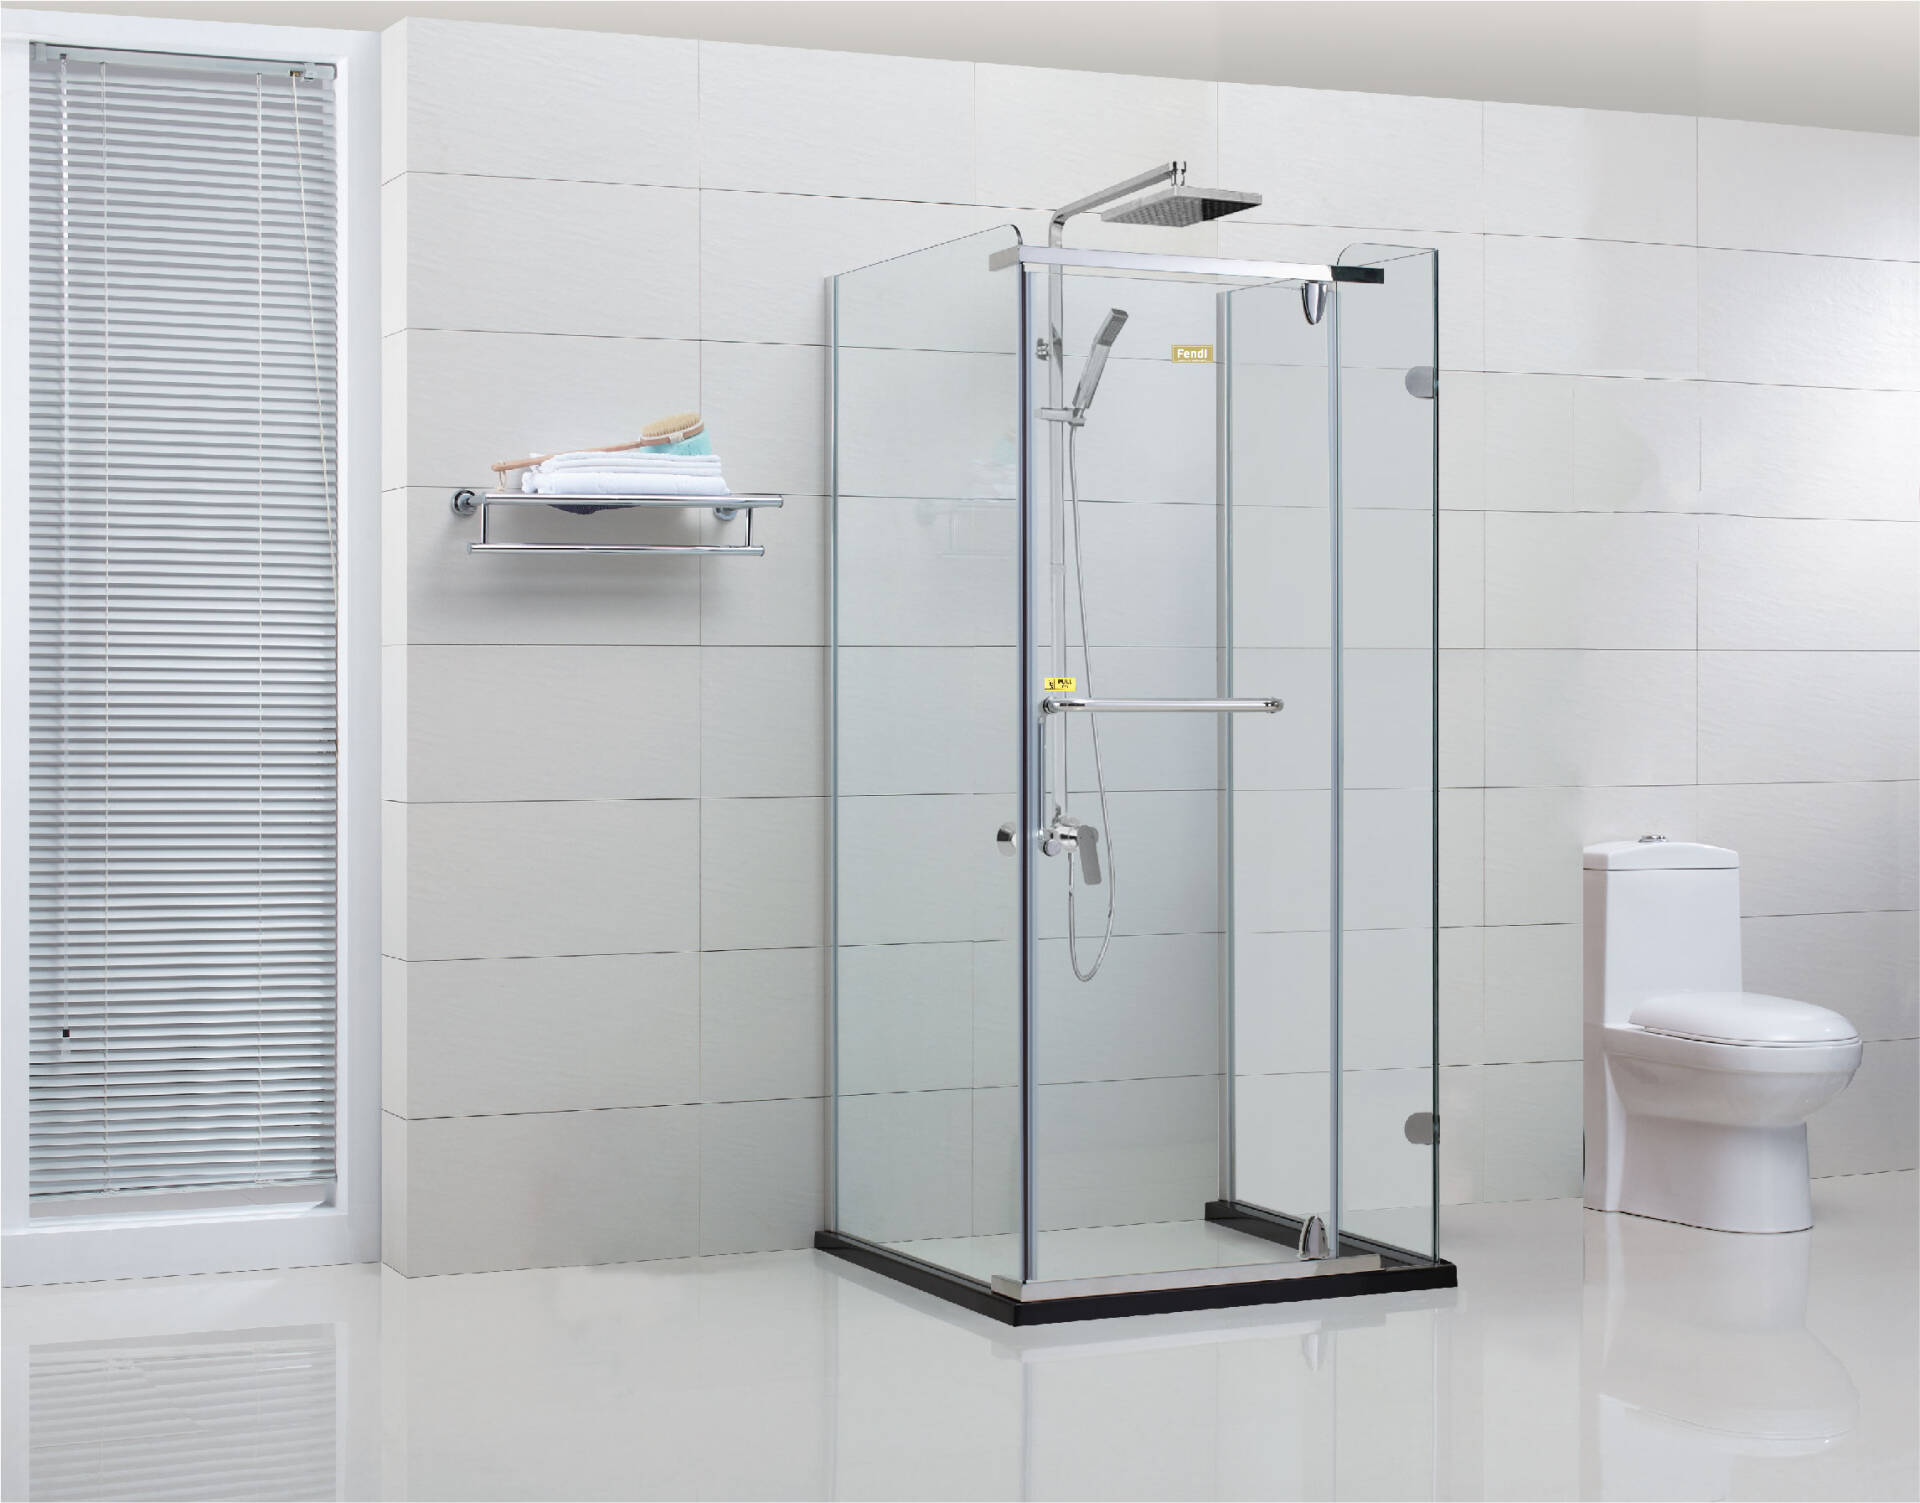 Phòng tắm kính đang dần trở nên phổ biến bởi sở hữu những ưu điểm về thẩm mỹ, phân chia khu vực khô - ướt hợp lý, tiện nghi khi sử dụng cho nhà ở dân dụng